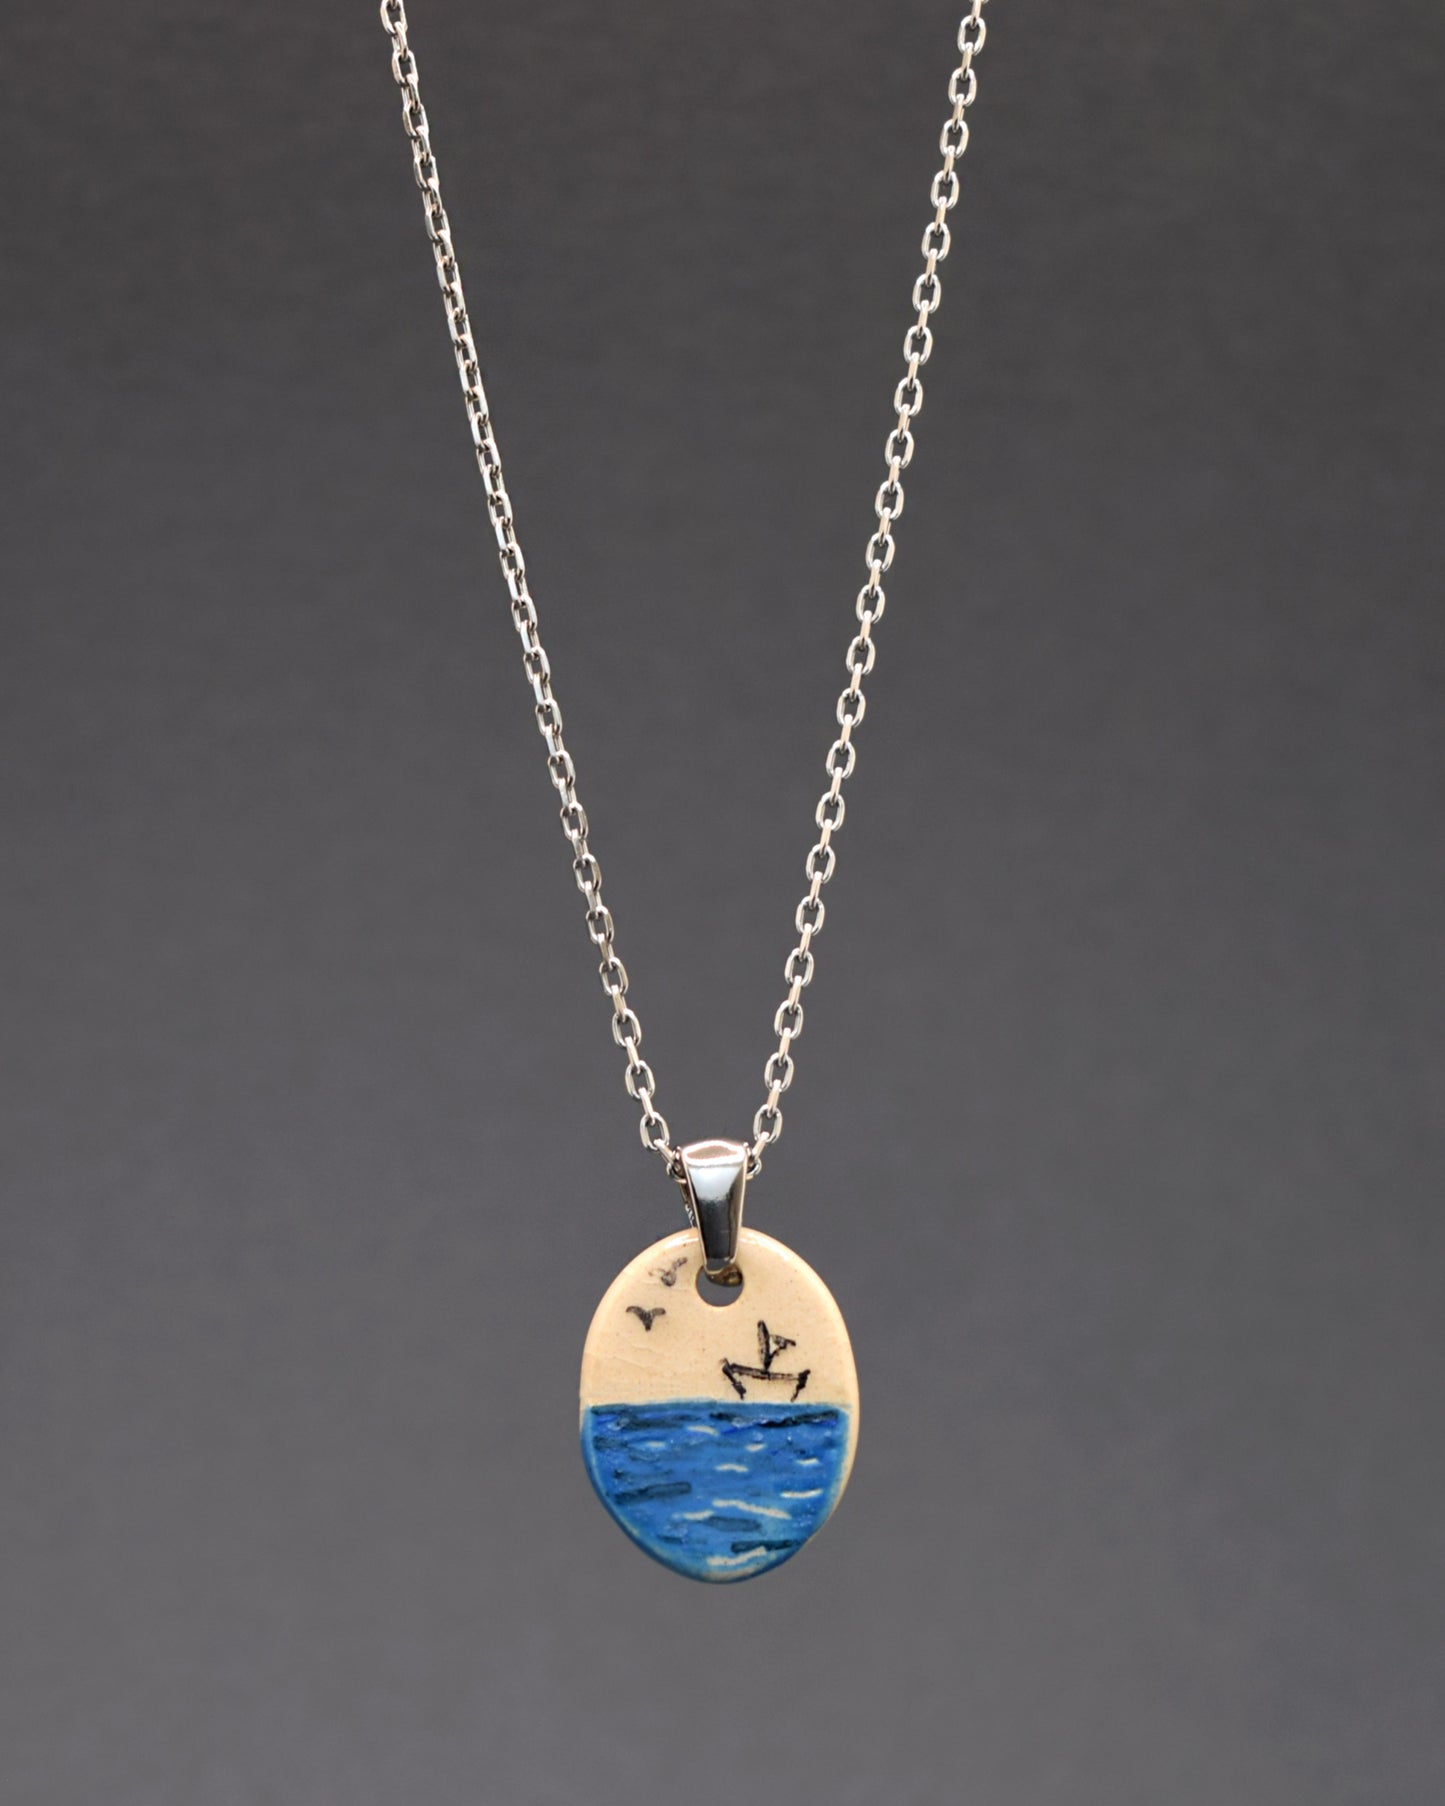 Um colar de aço inoxidável com um toque artístico. Destaca-se o pendente de cerâmica pintado à mão, retratando um barco de papel no mar. Uma fusão de elegância durável e arte delicada em uma única peça.